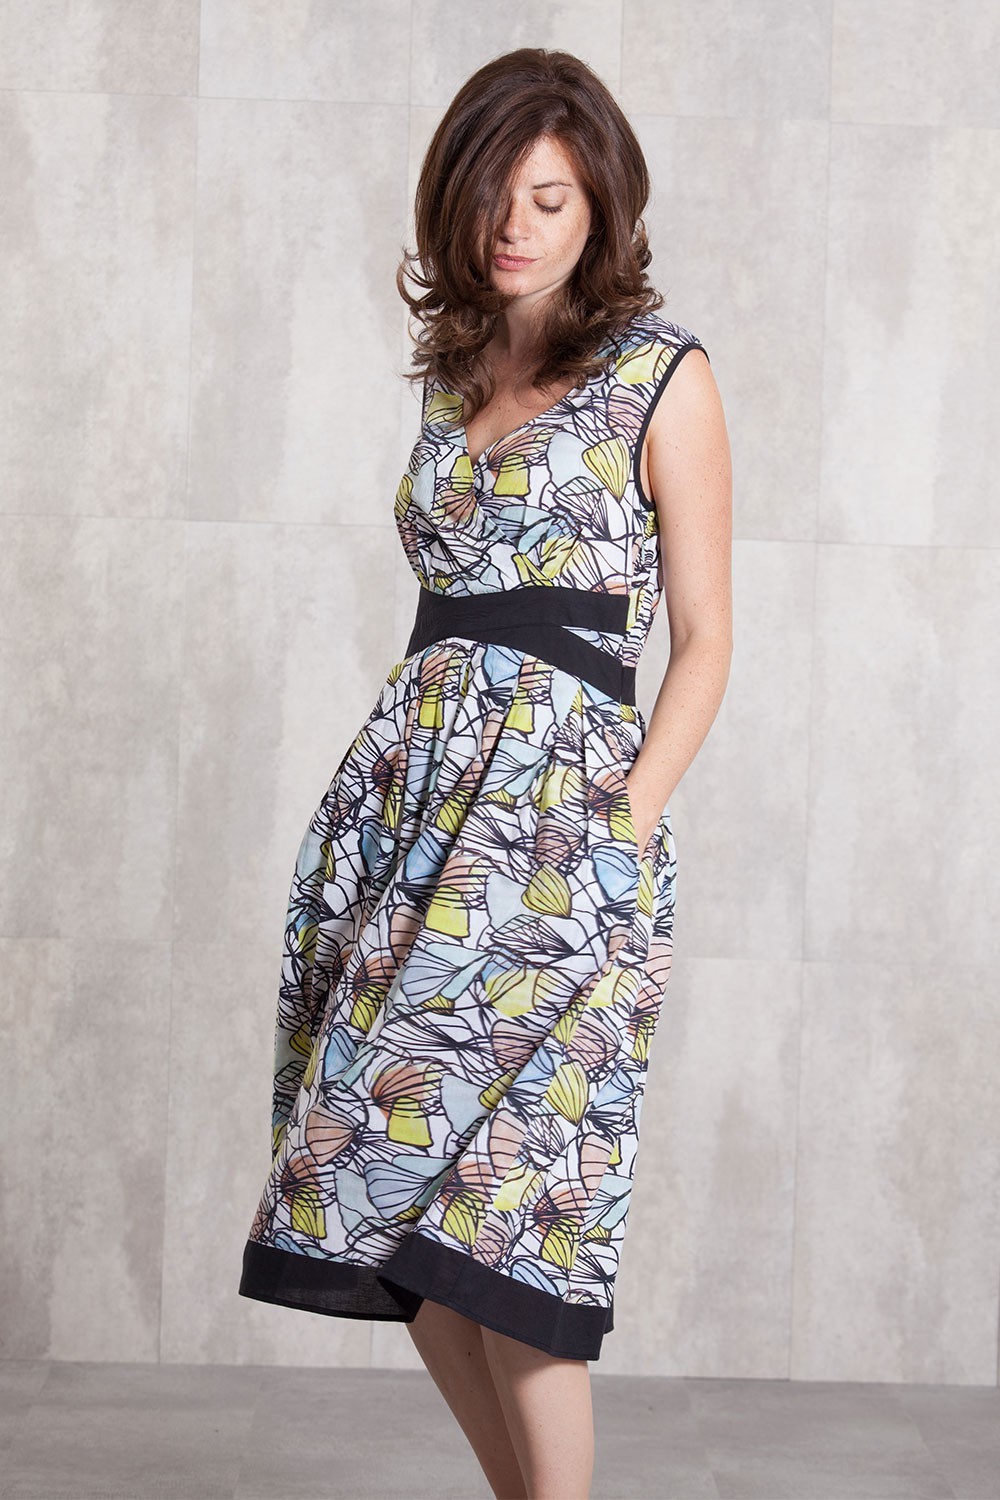 Dress coton voil digital print-630-76